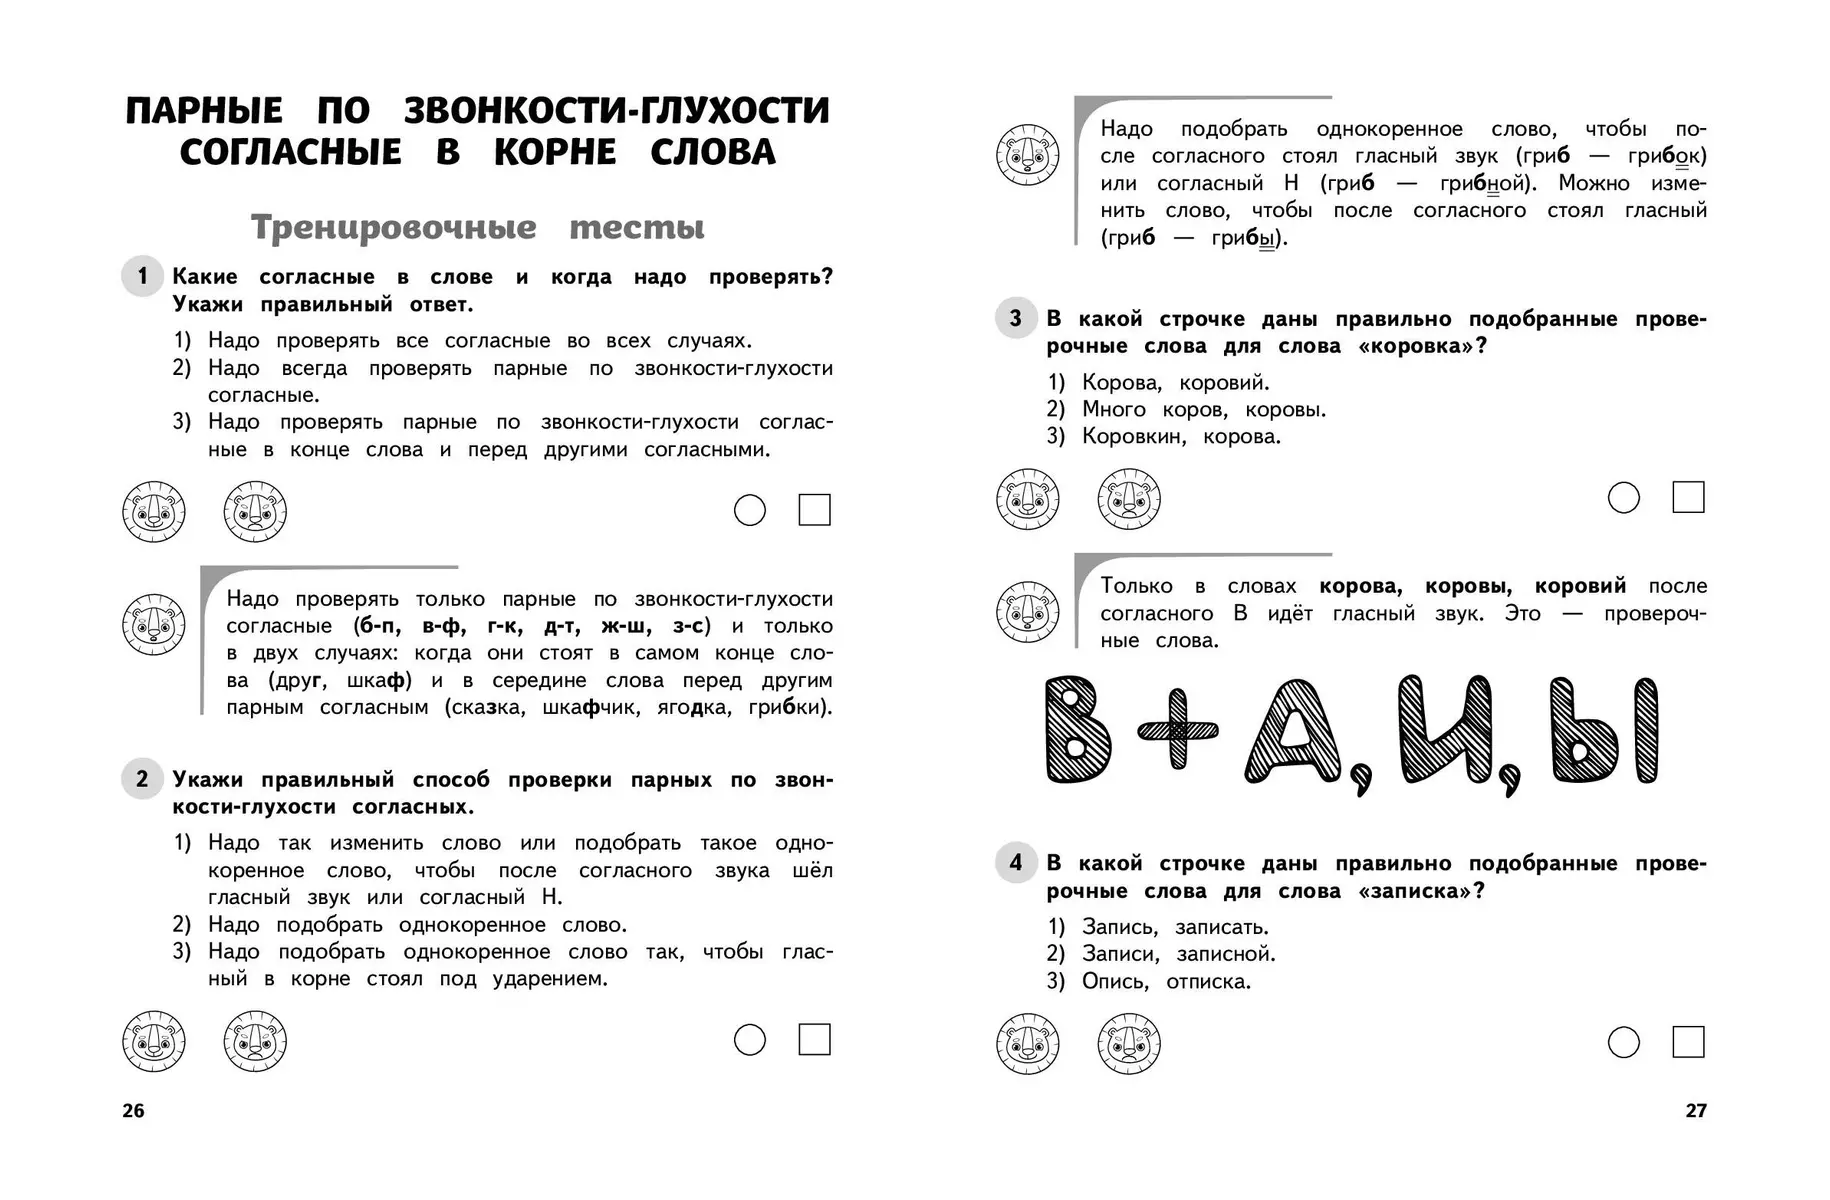 Русский язык. 2 класс. Обучающие и контрольные тесты